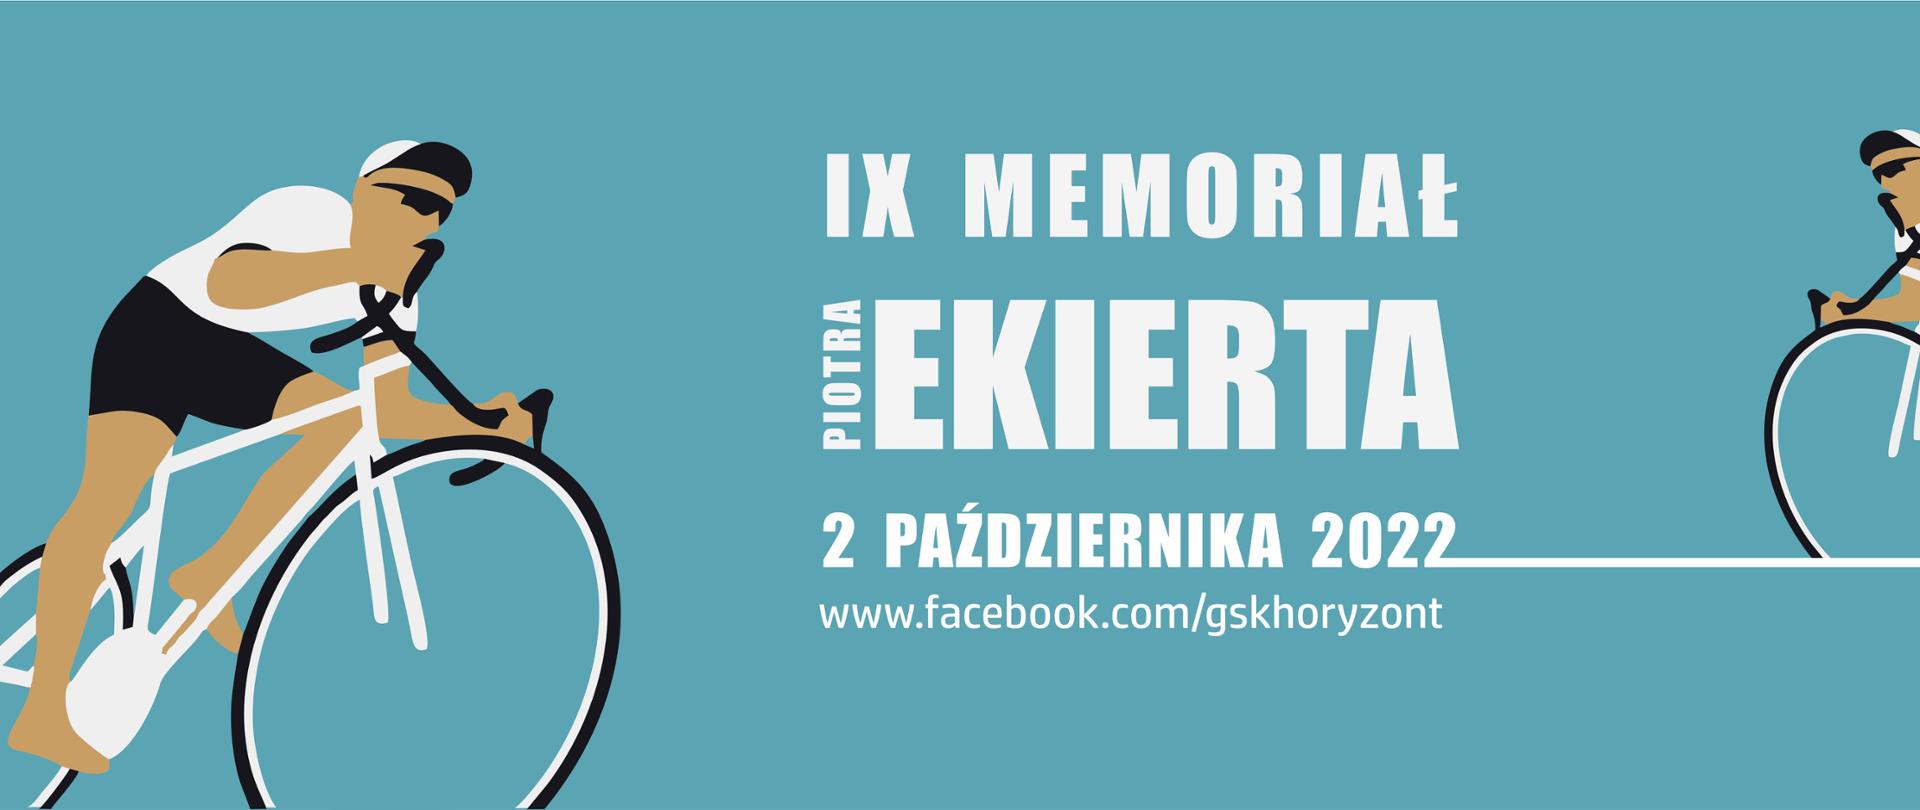 IX Memoriał Piotra Ekierta 